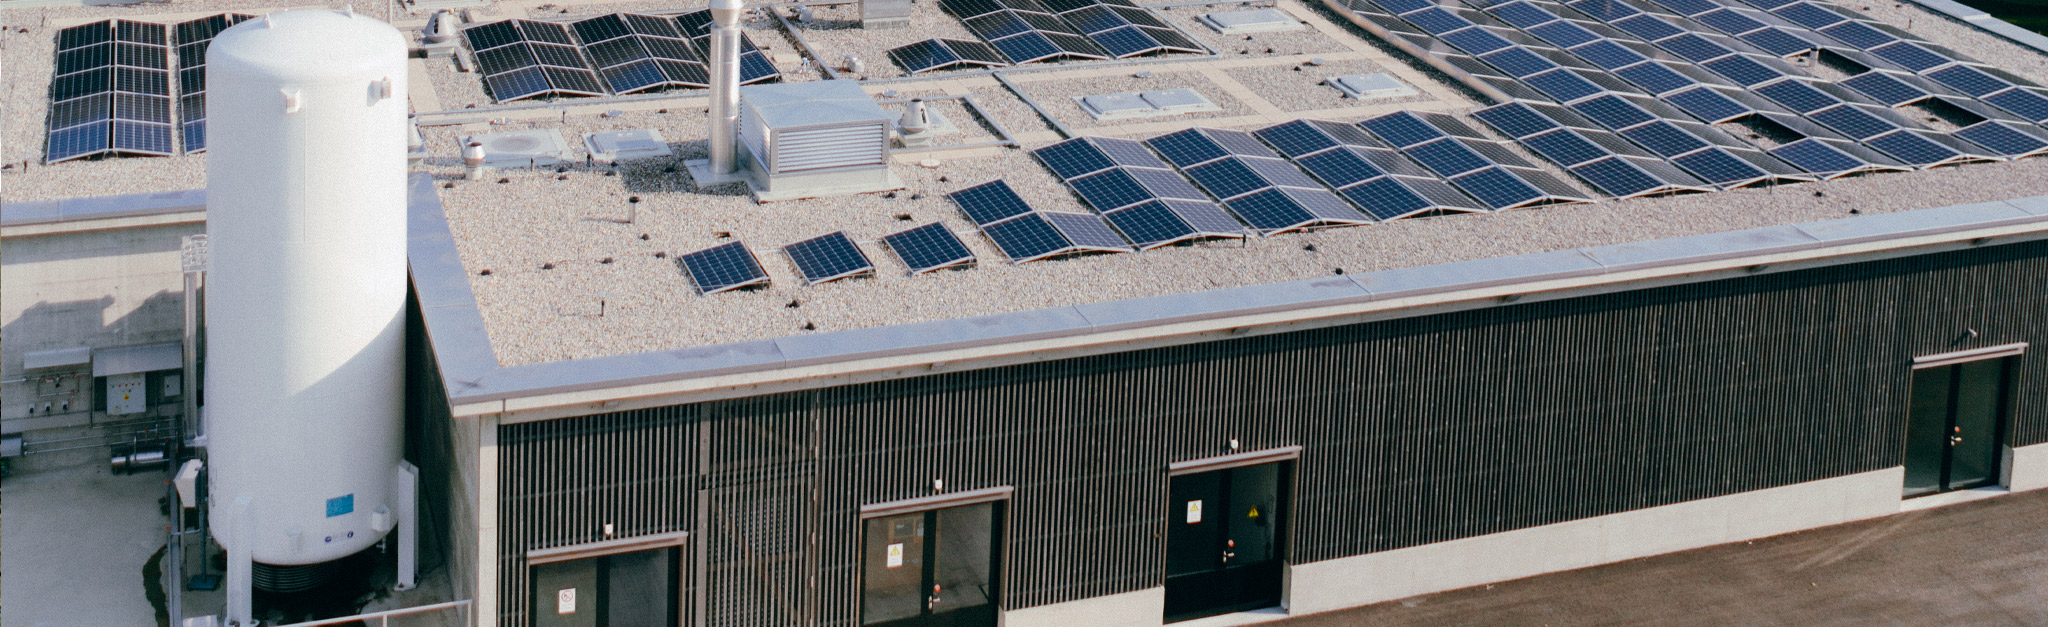 Eine Luftaufnahme eines Gebäudes mit Sonnenkollektoren auf dem Dach.